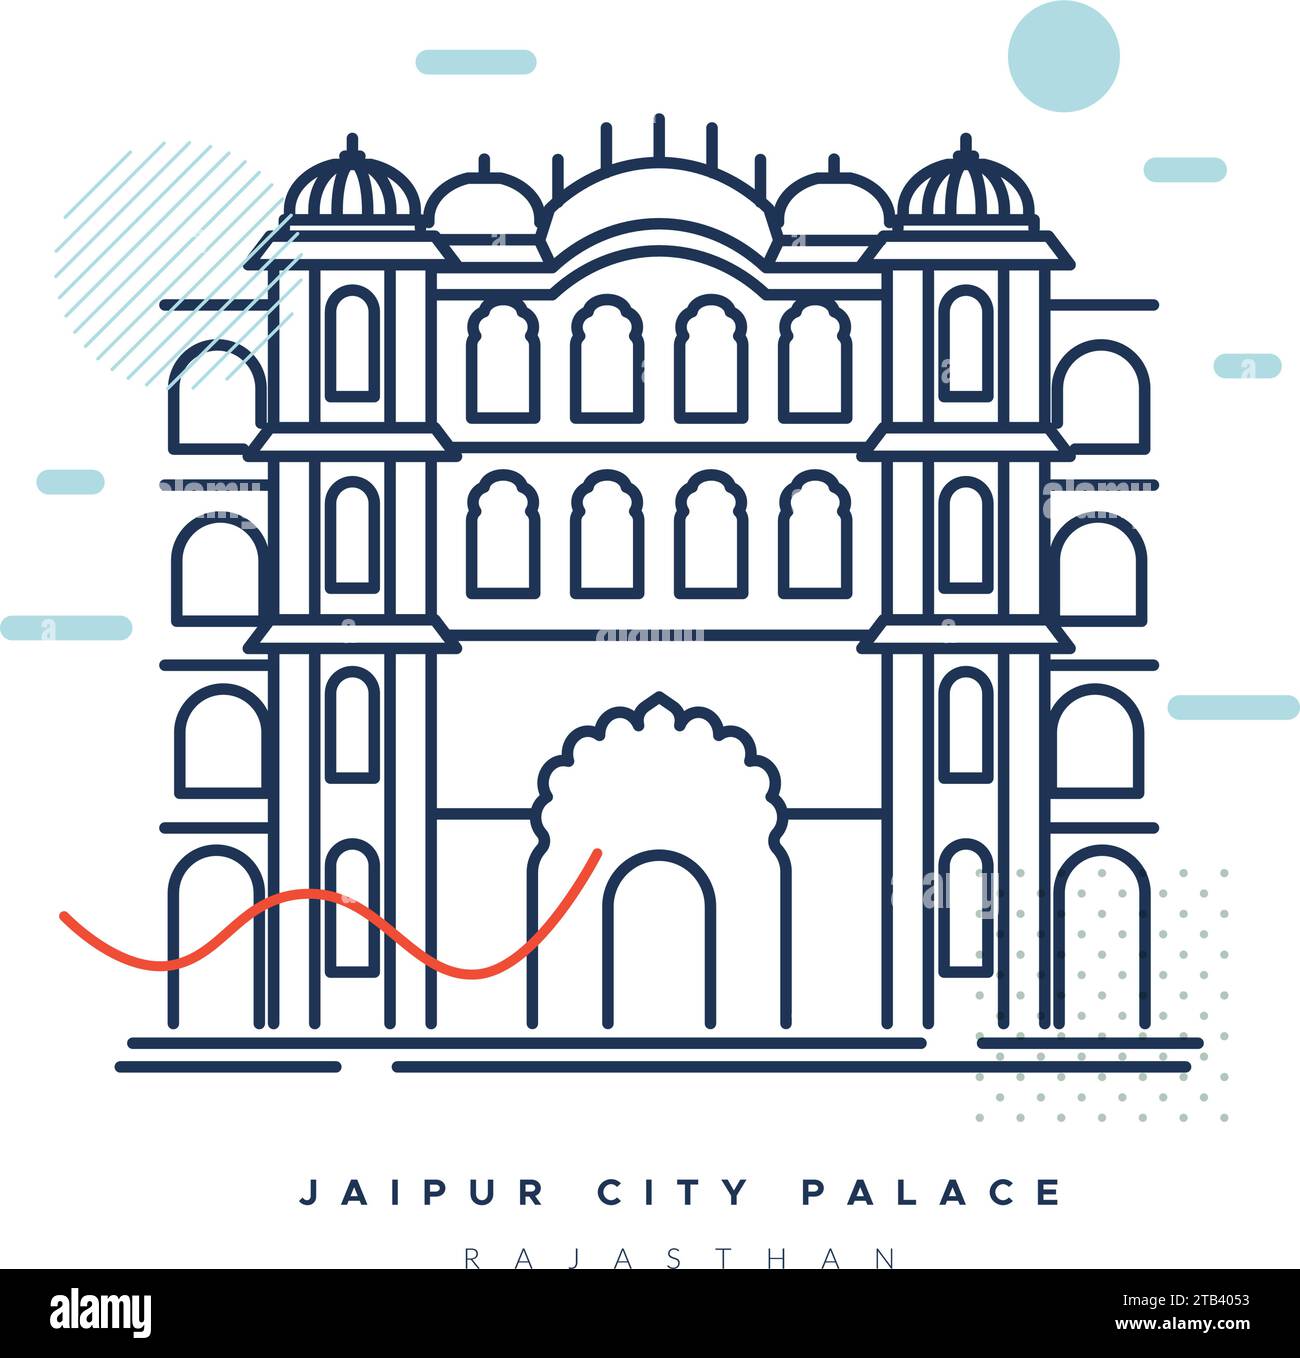 Palazzo della città di Jaipur, Rajasthan - Stock Illustration as EPS 10 file Illustrazione Vettoriale